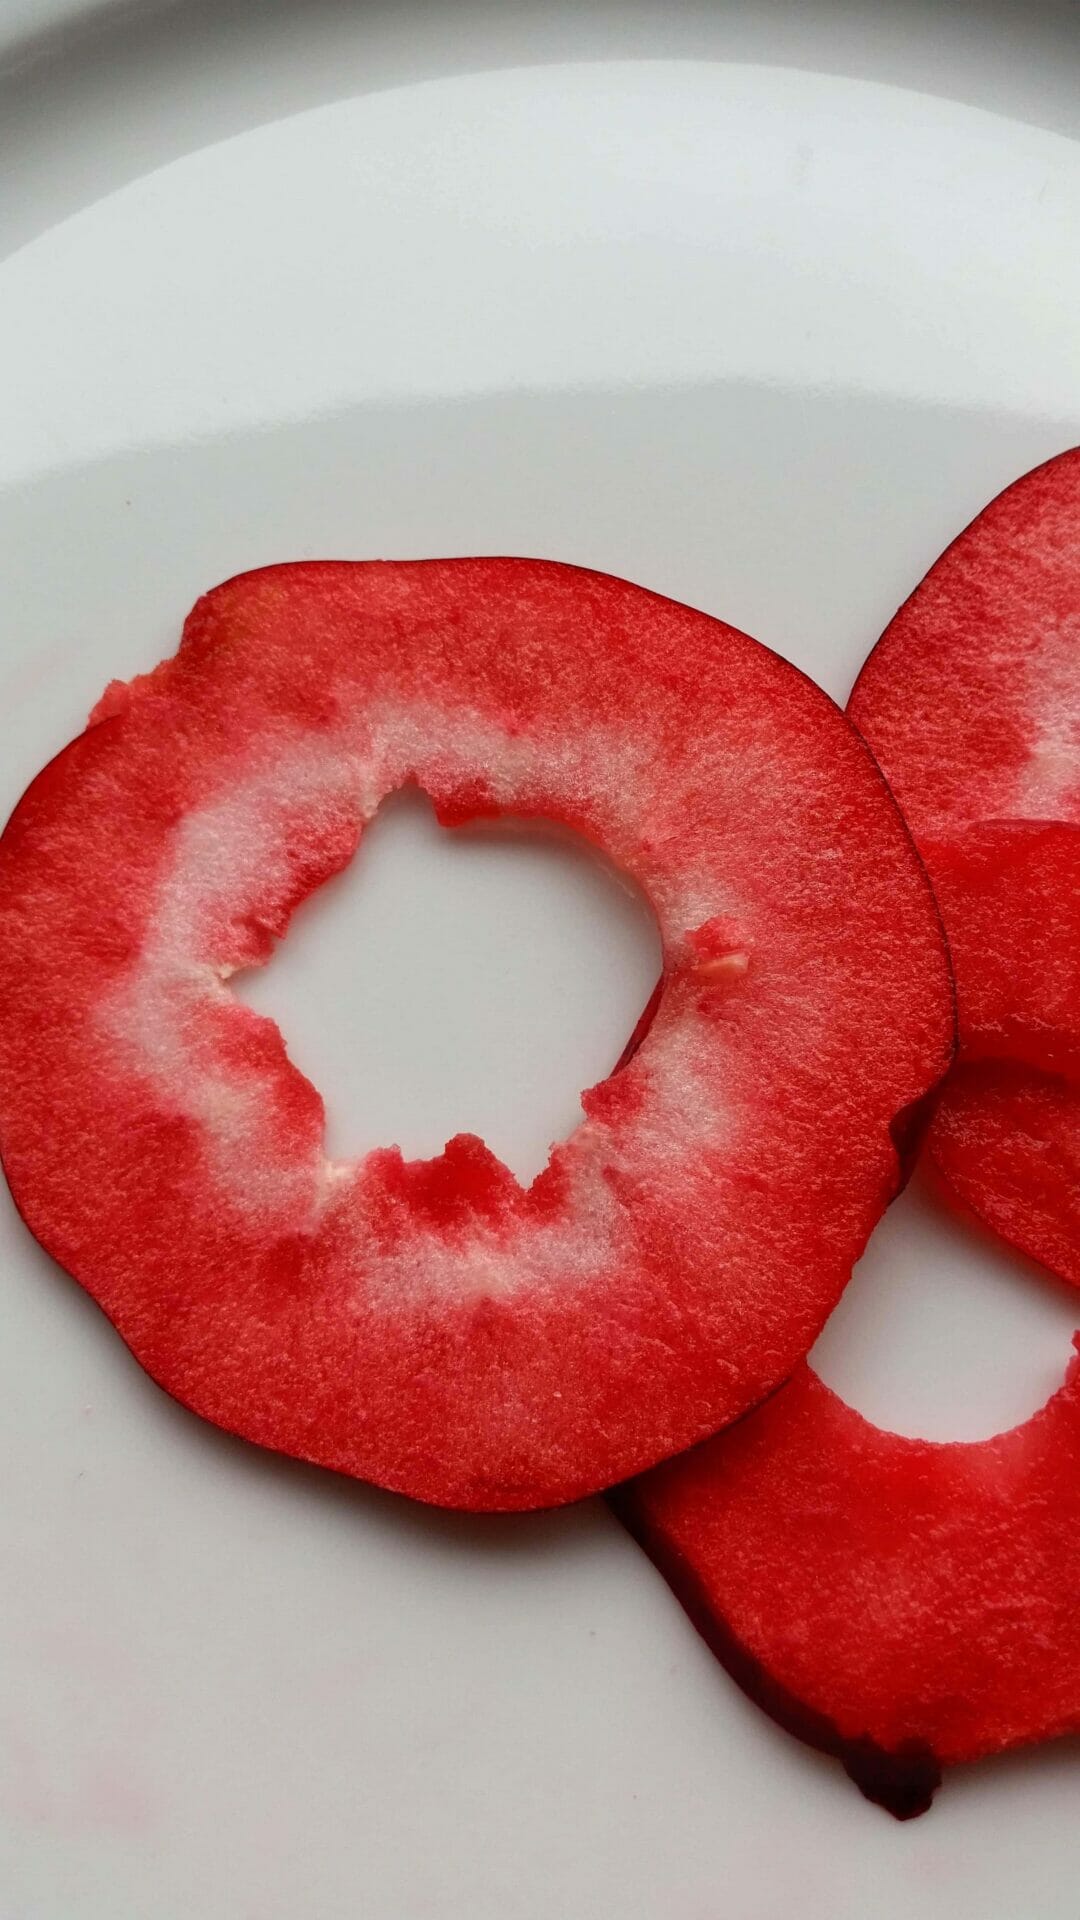 stress svinge protein Efterår og æble chips eller tørrede æbleringe - Danish Things